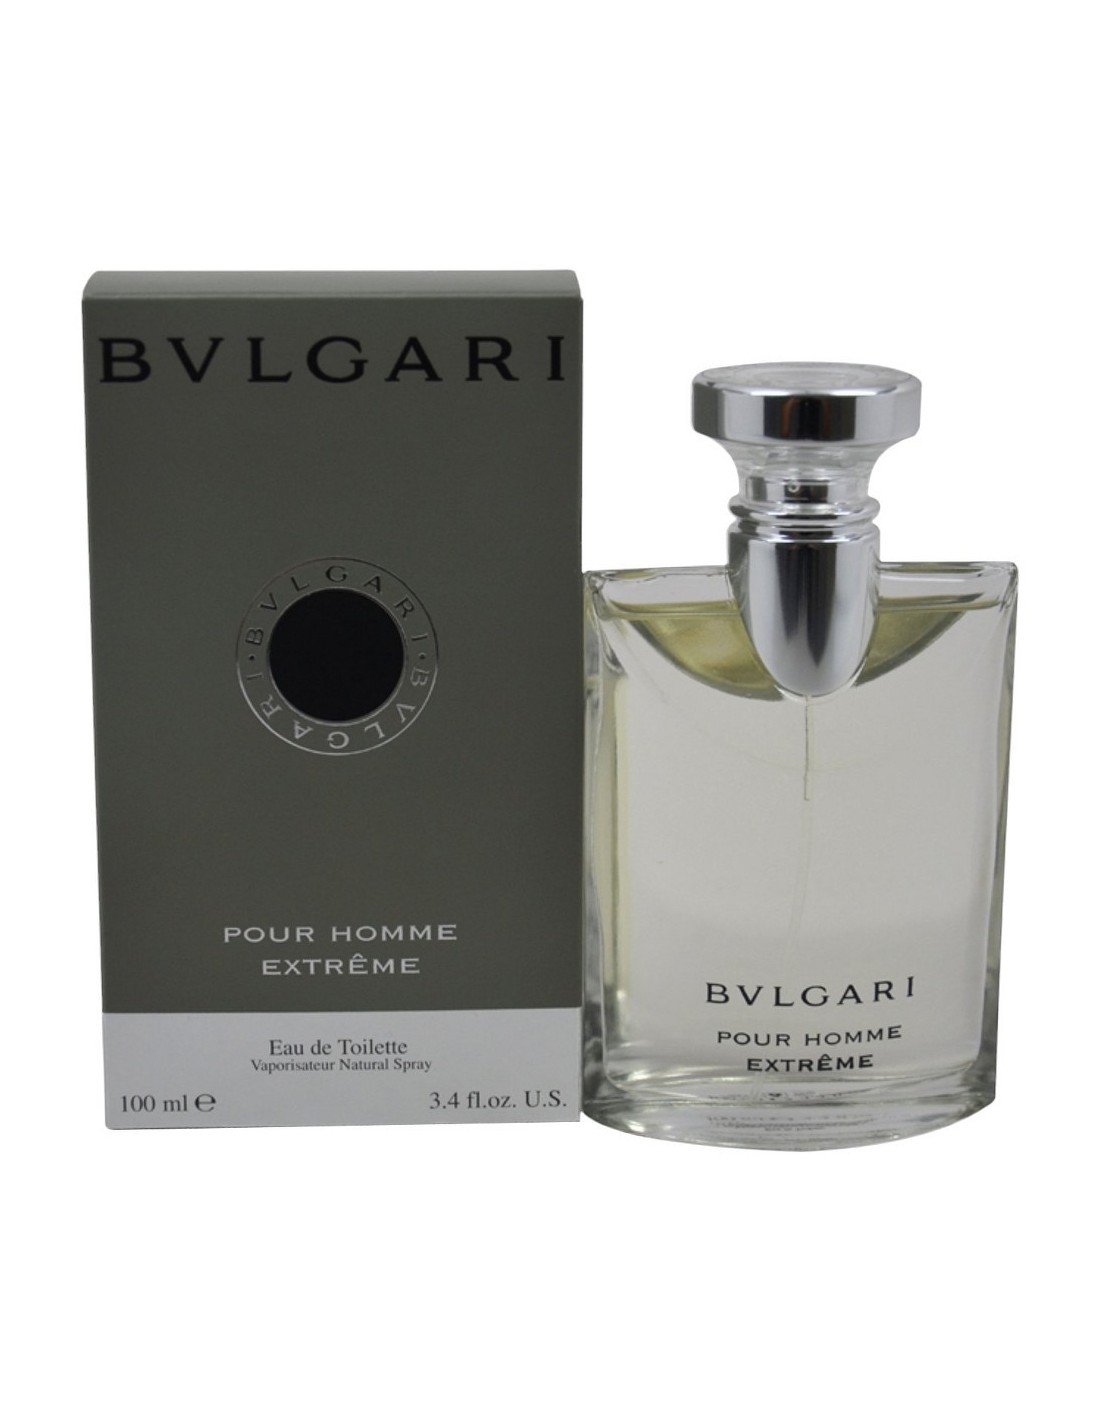 bulgari parfum wiki